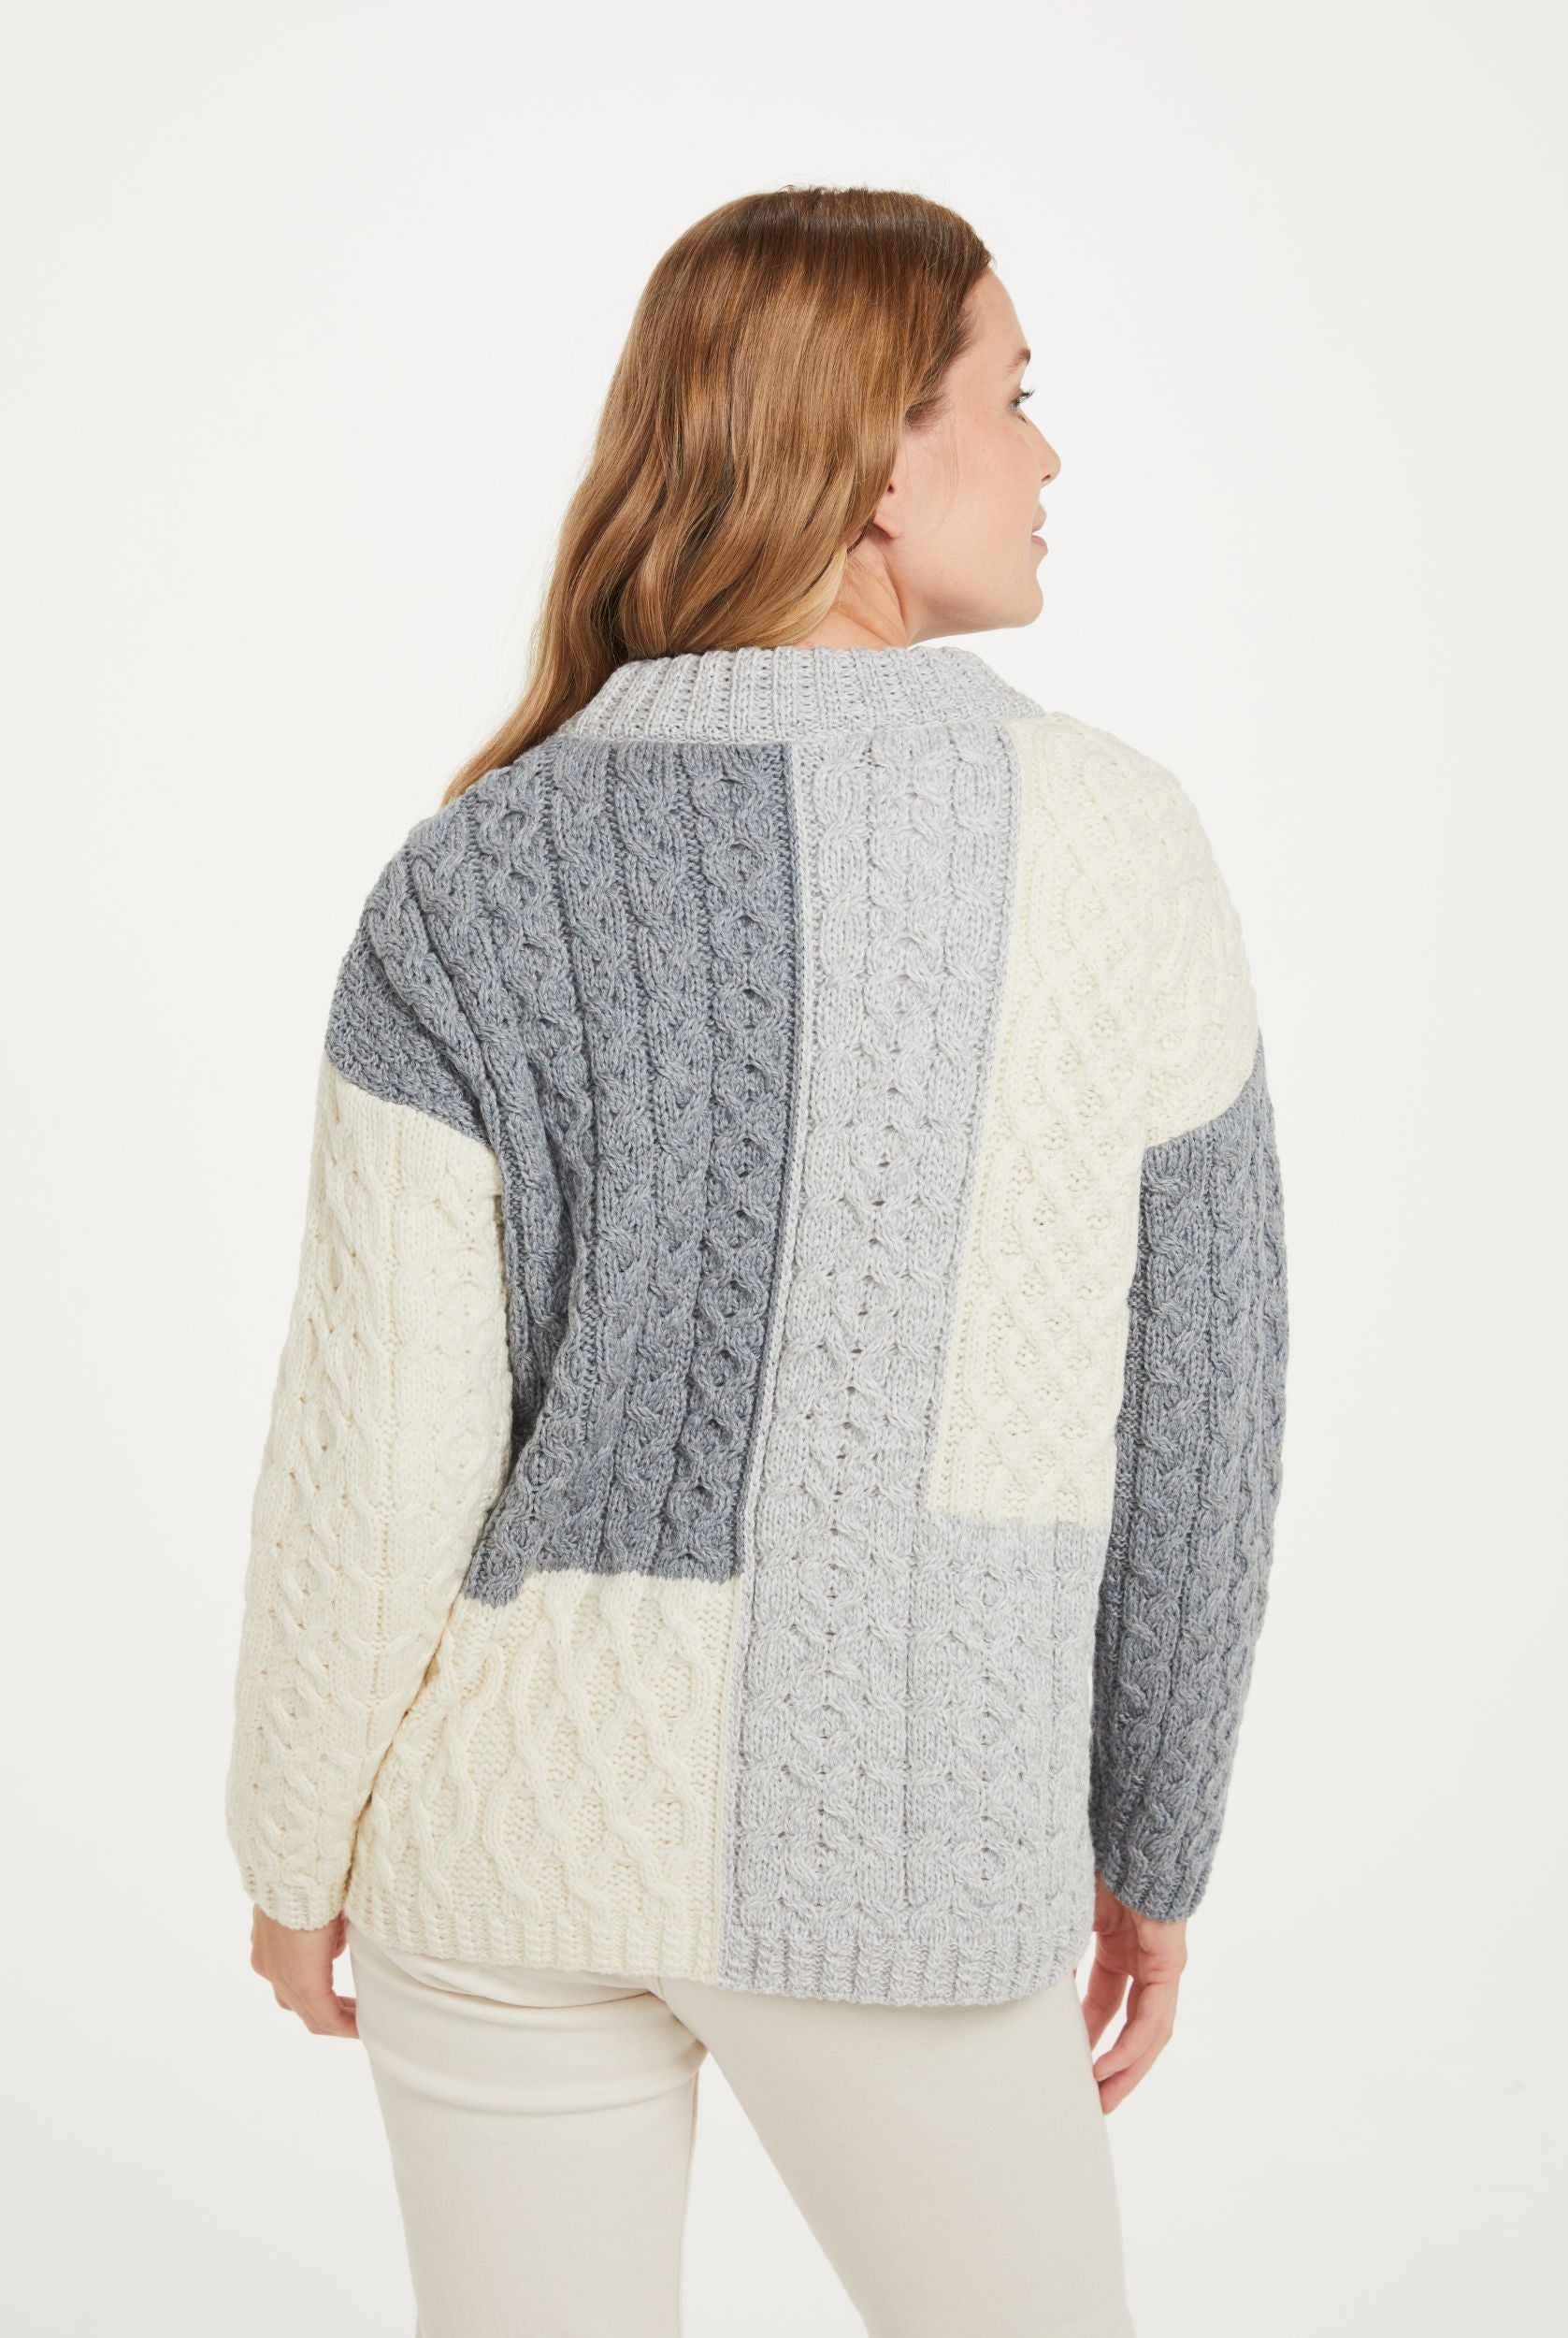 Cobh Aran Patch Sweater